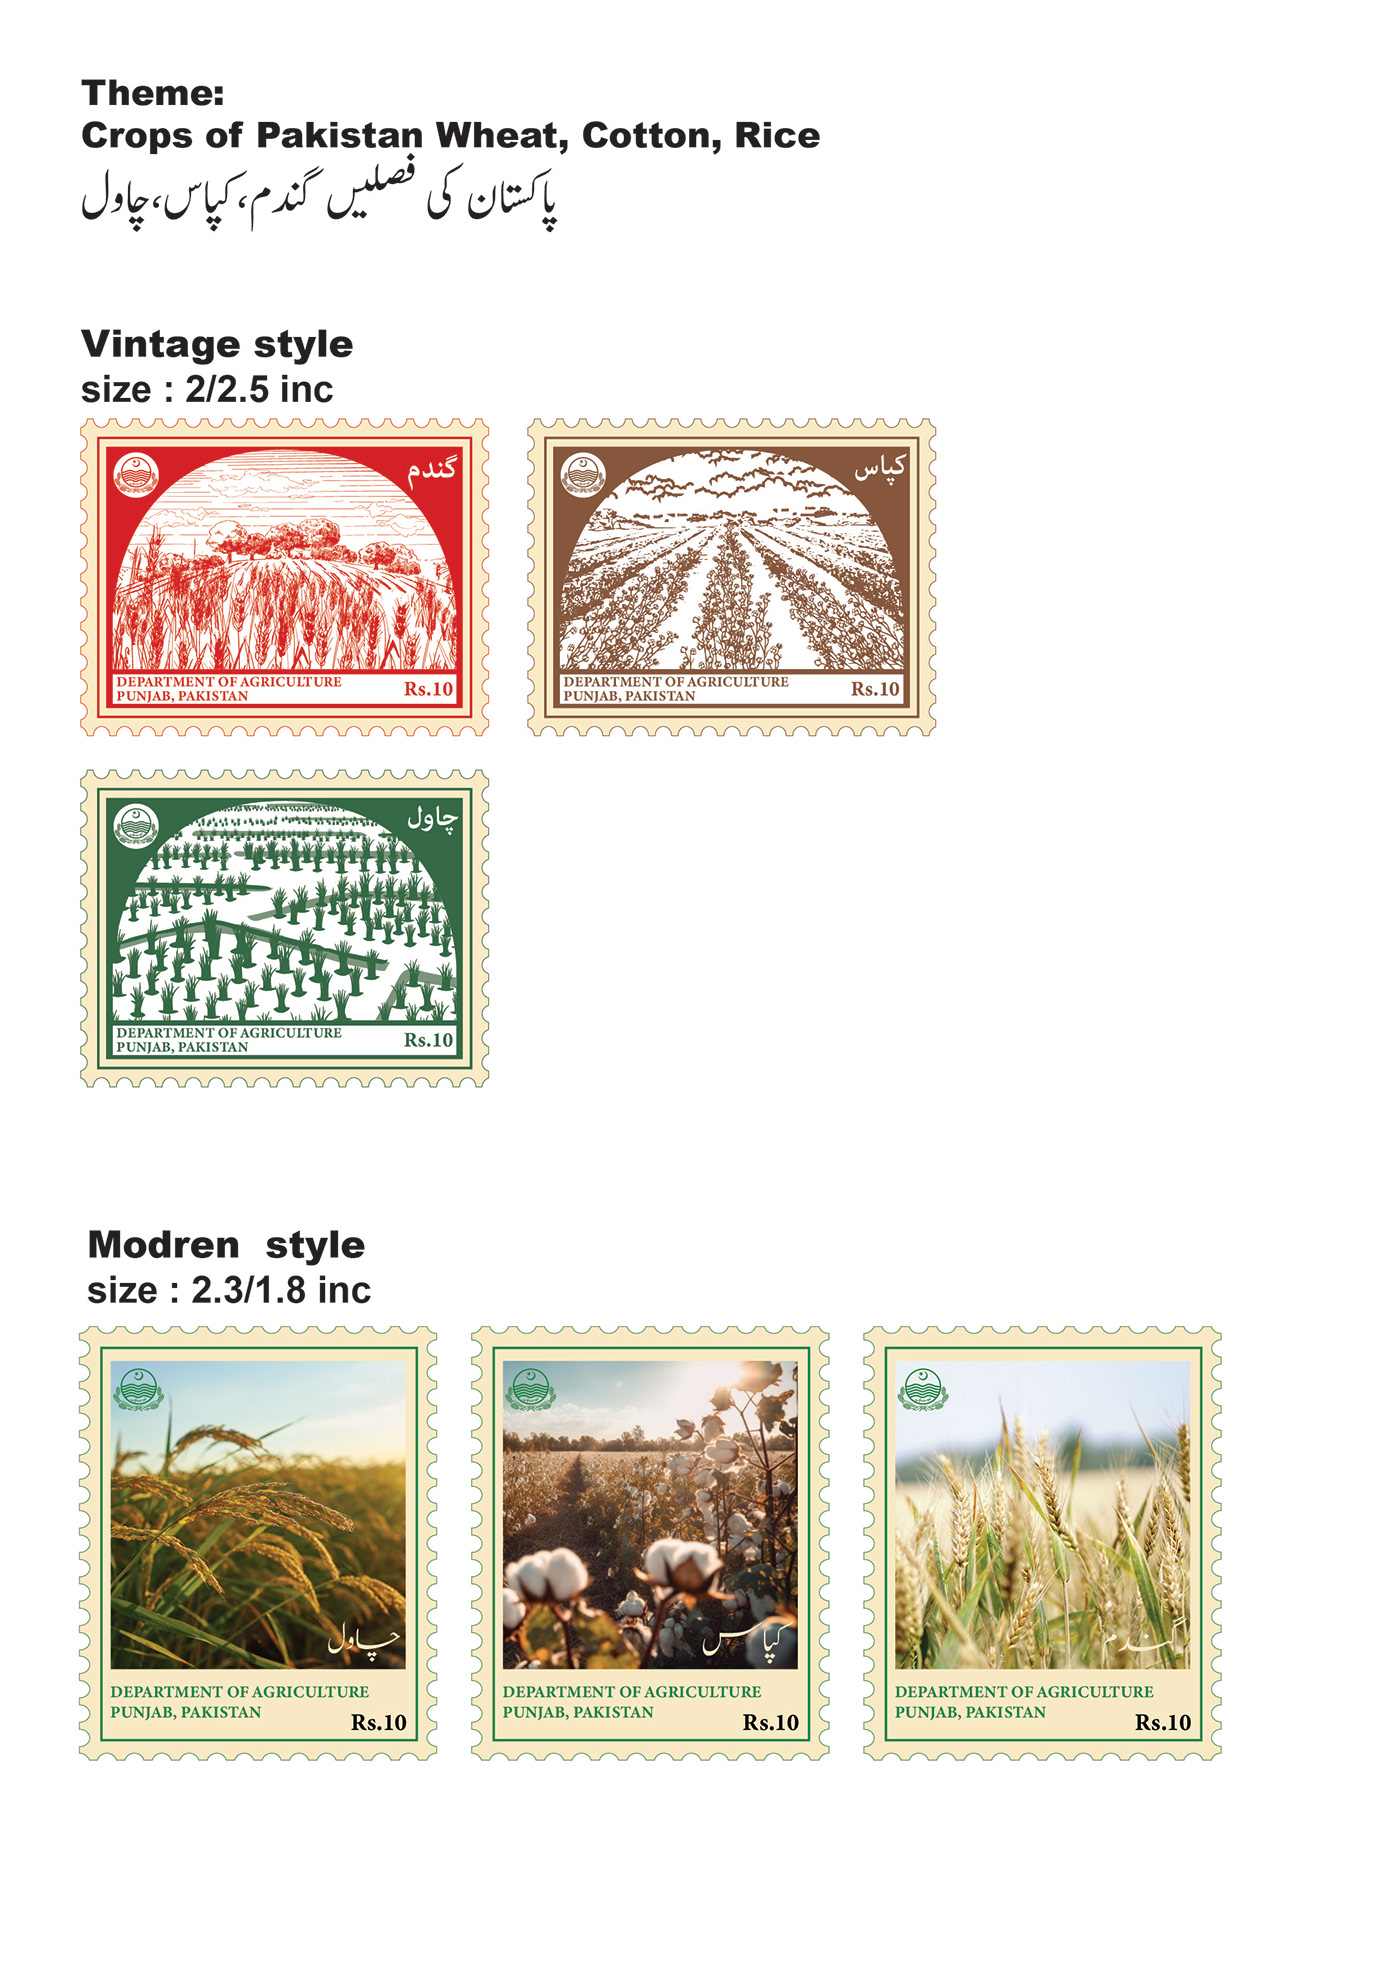 postage stamps vintage ILLUSTRATION  Retro vector